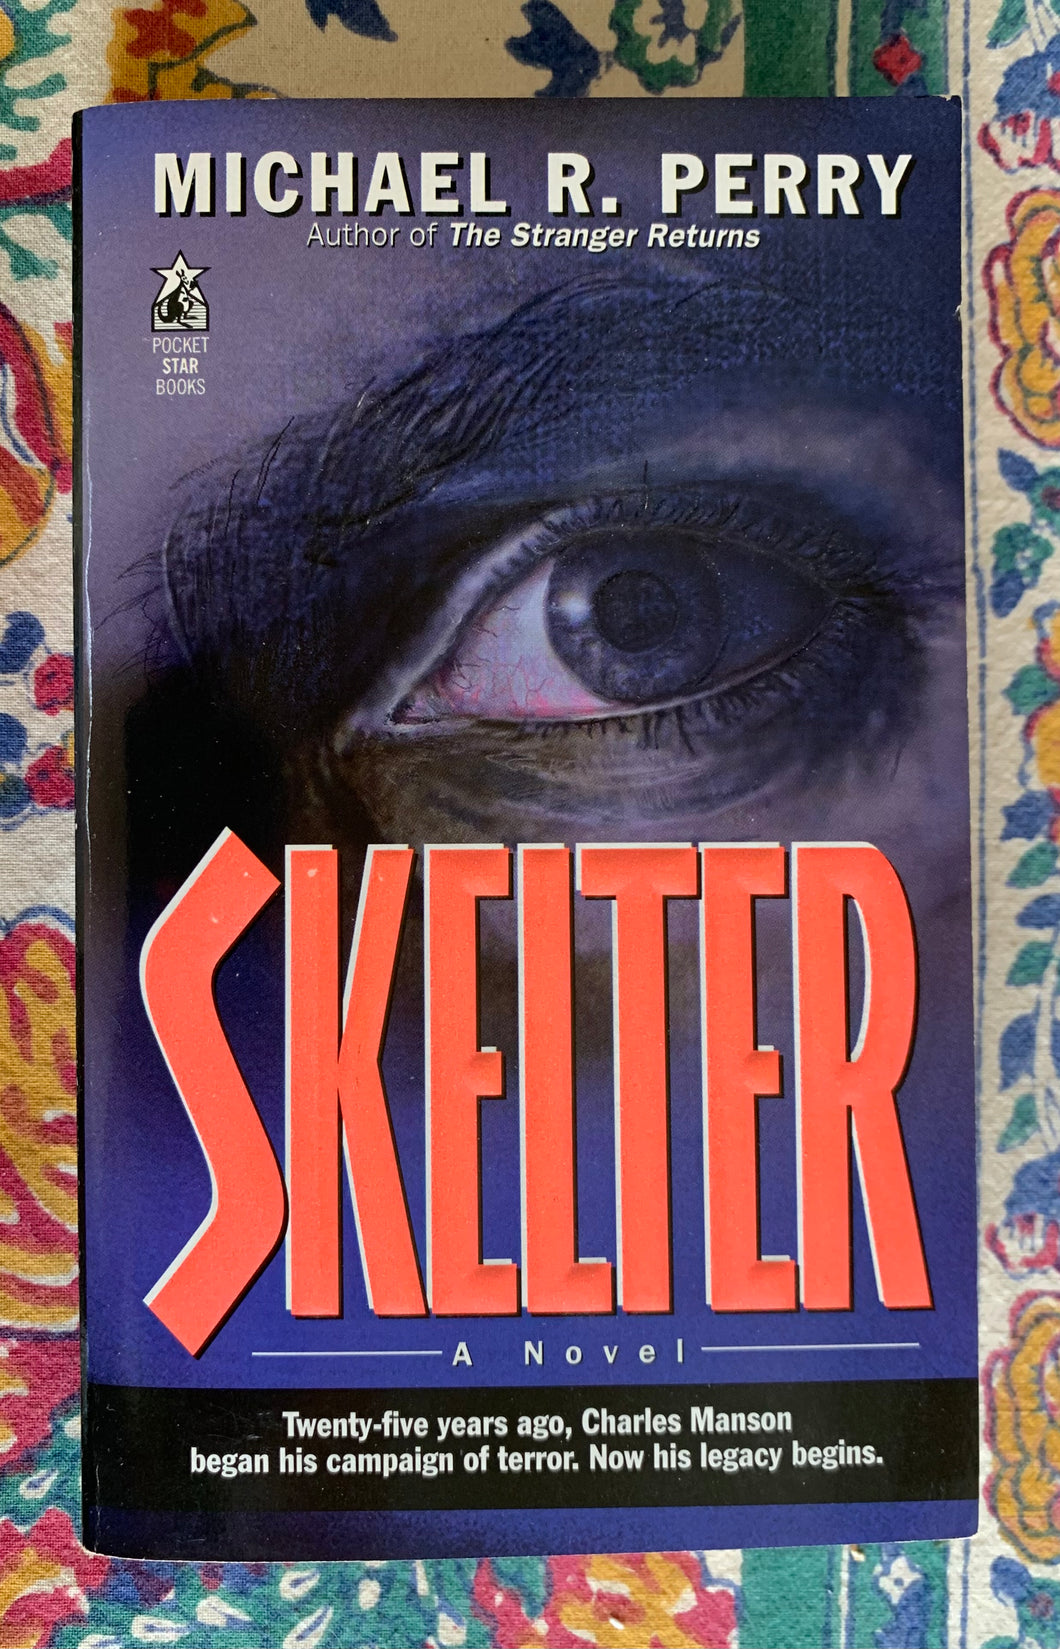 Skelter: A Novel